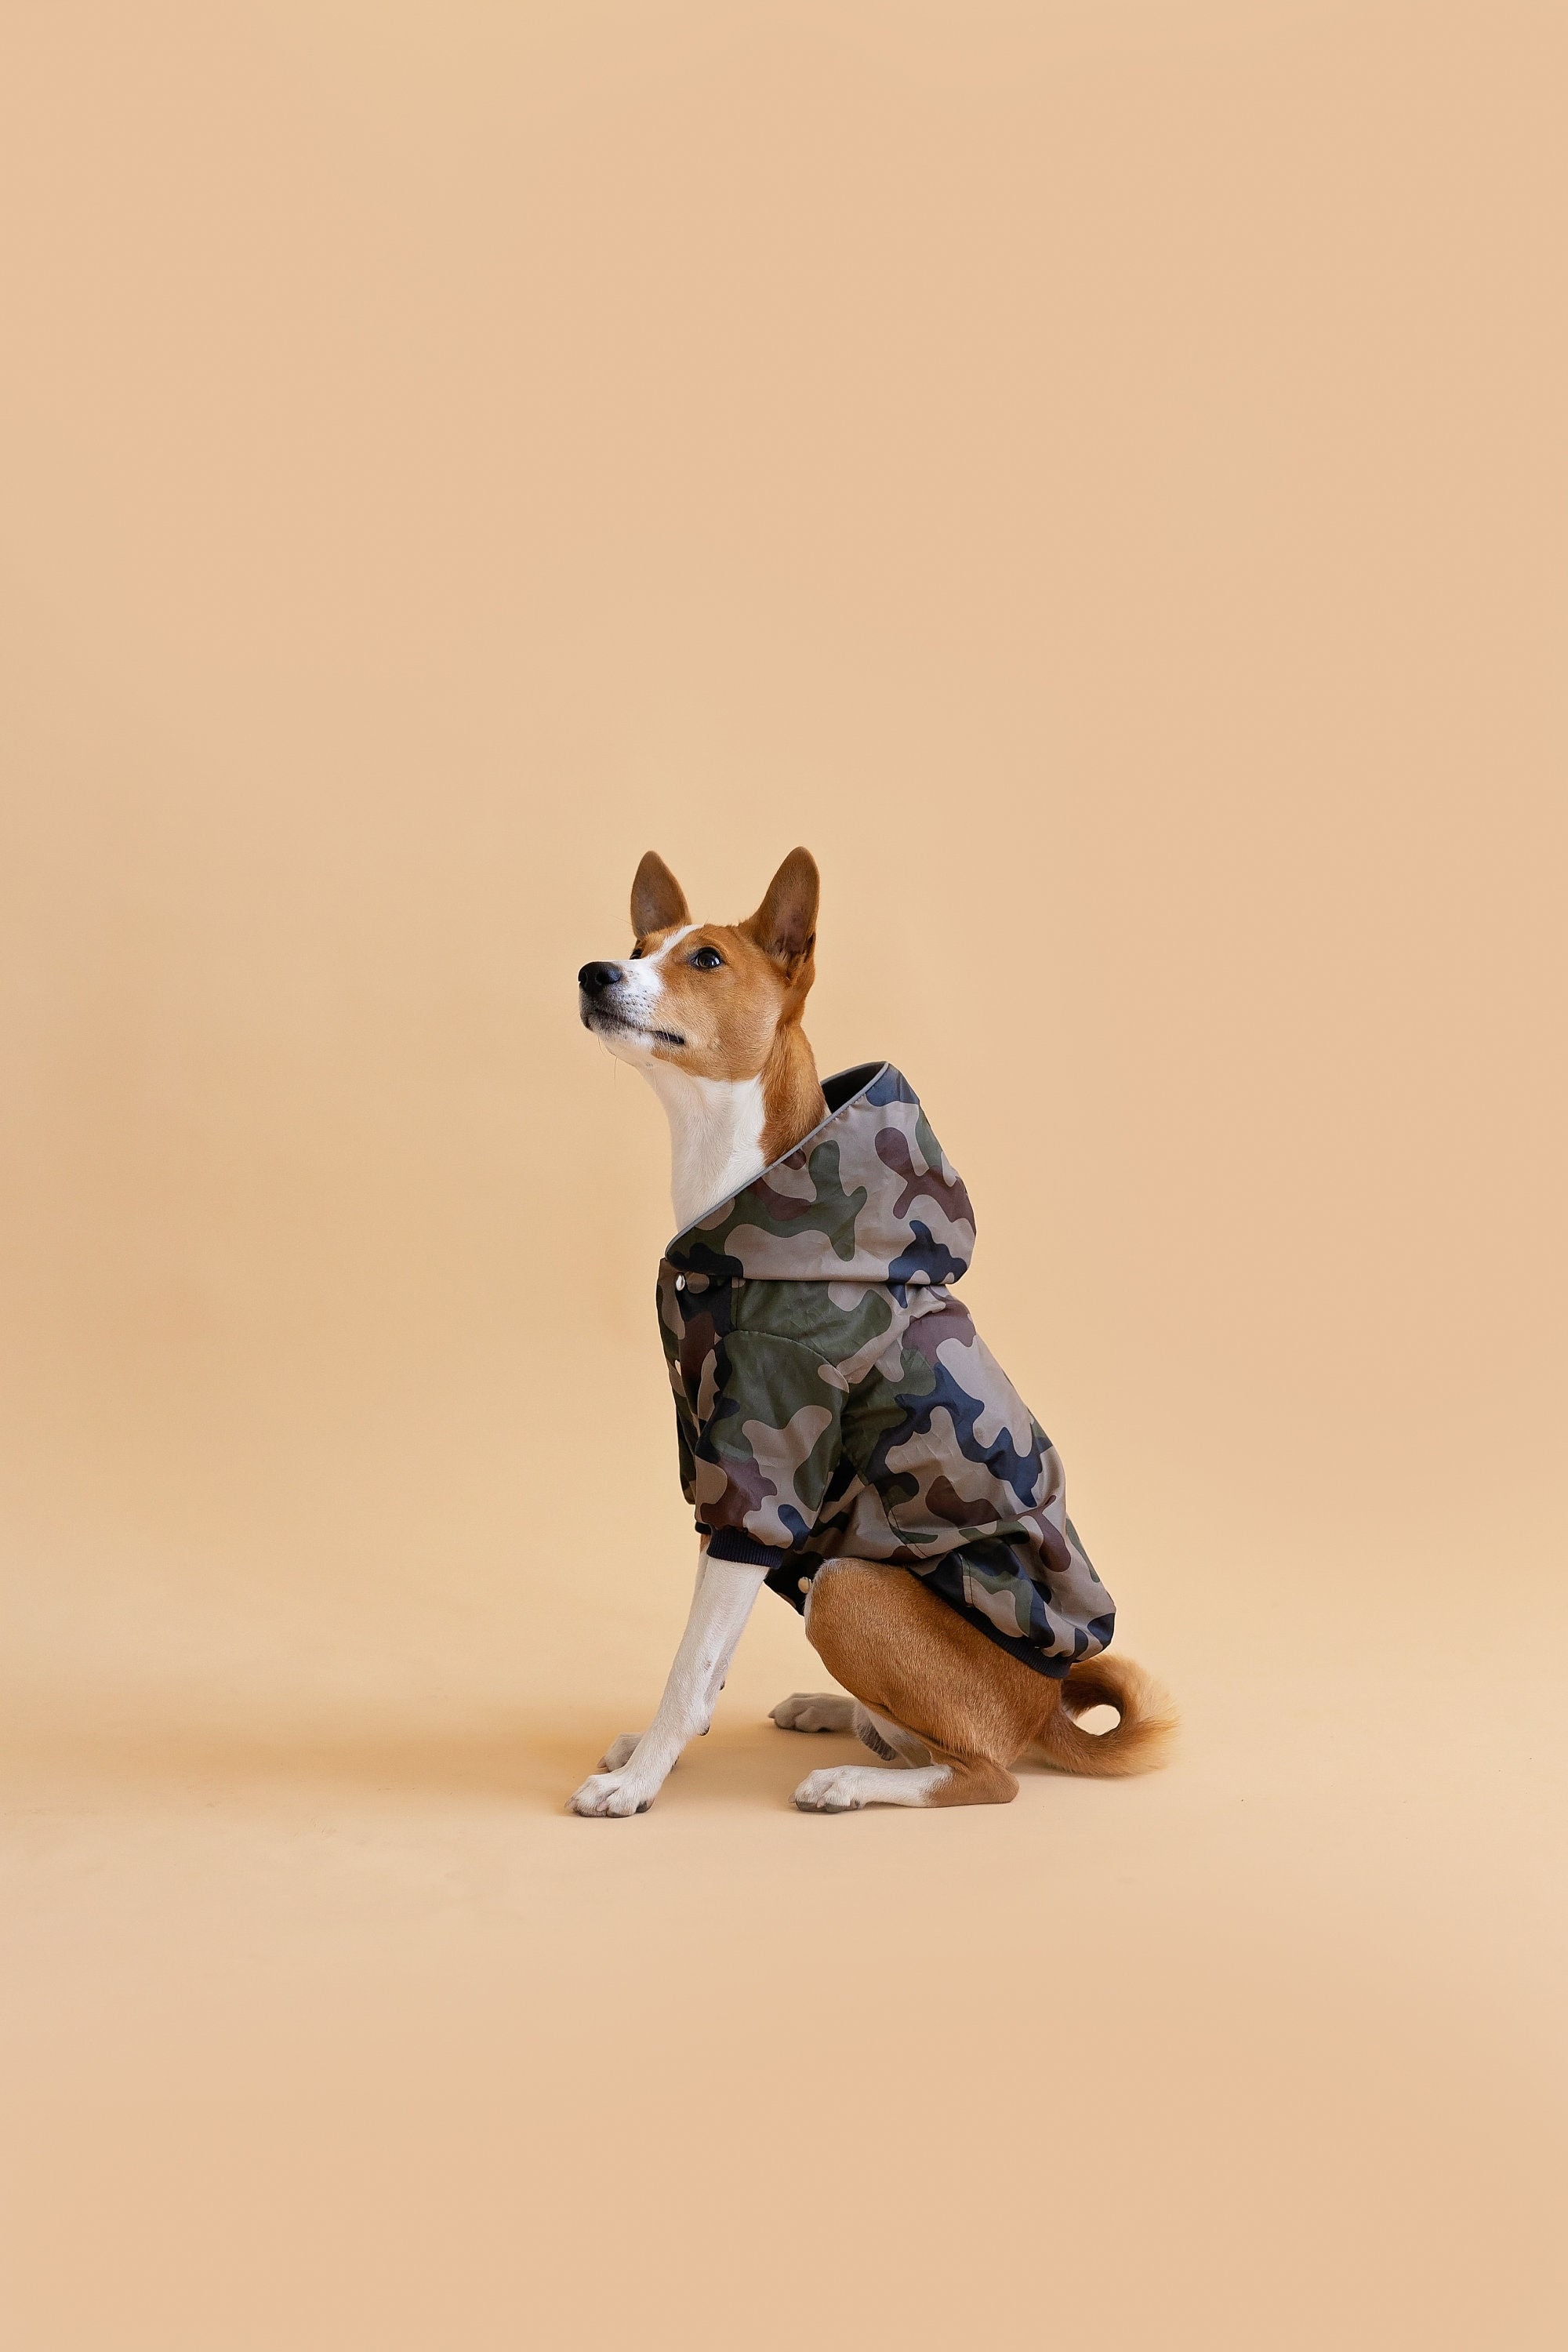 Buy Wholesale China Designer Dog Clothes Reflective Dog Raincoat